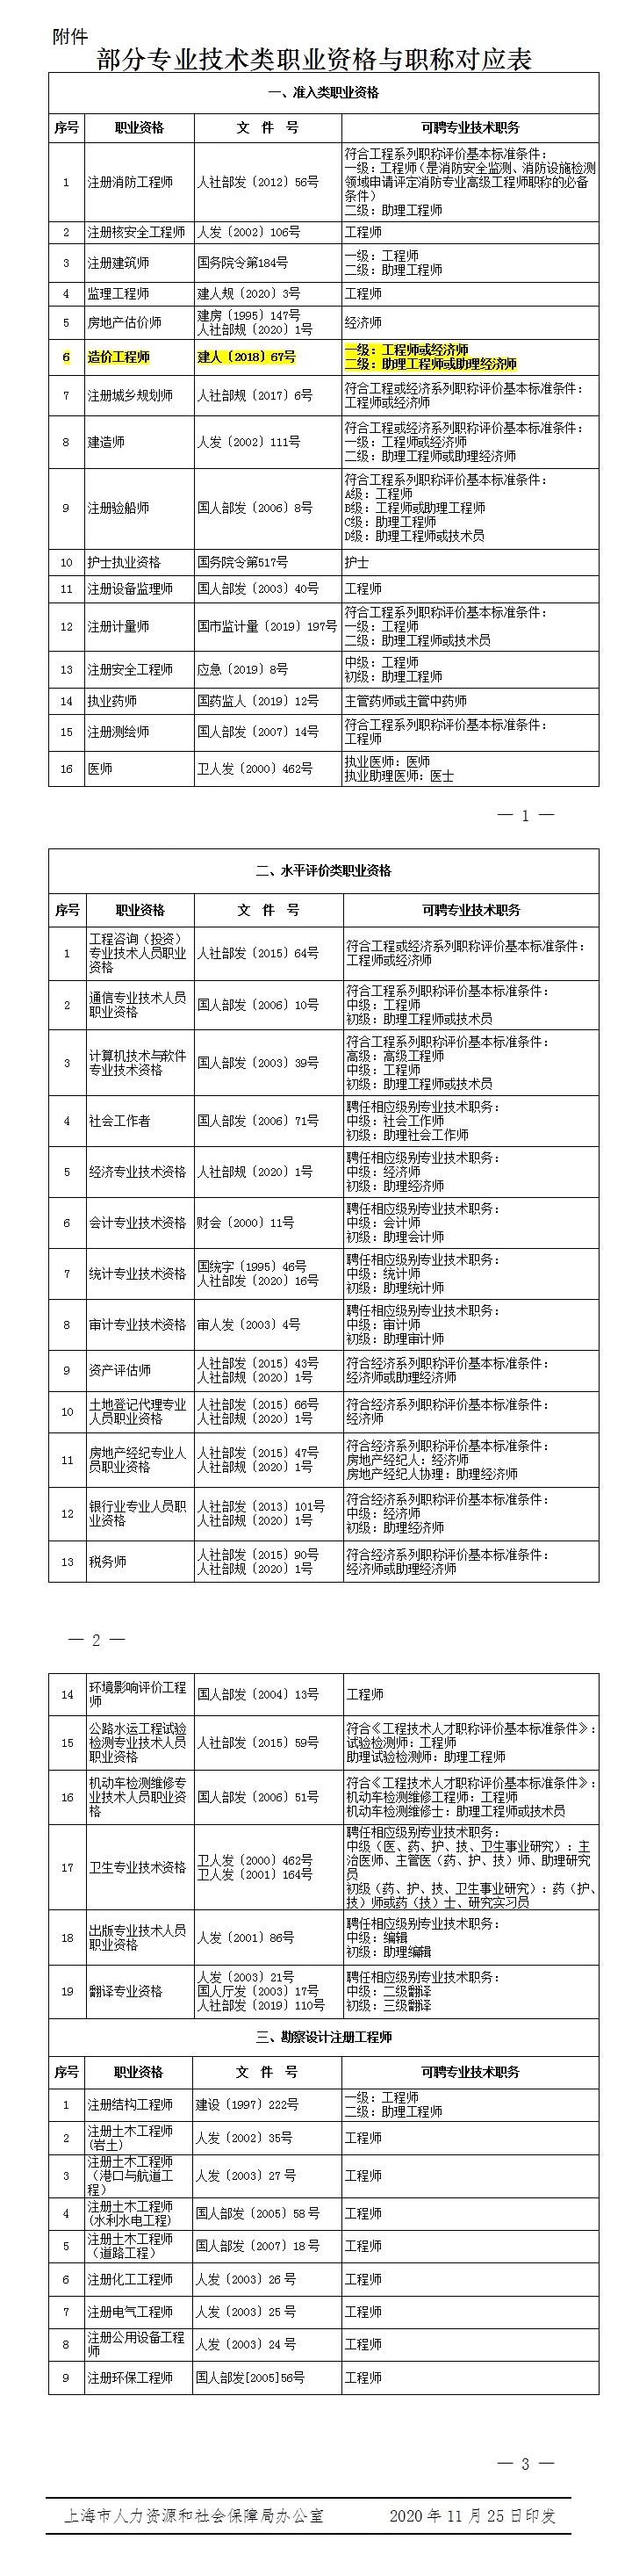 2020上海明确：二级造价工程师可聘助理工程师或助理经济师职称